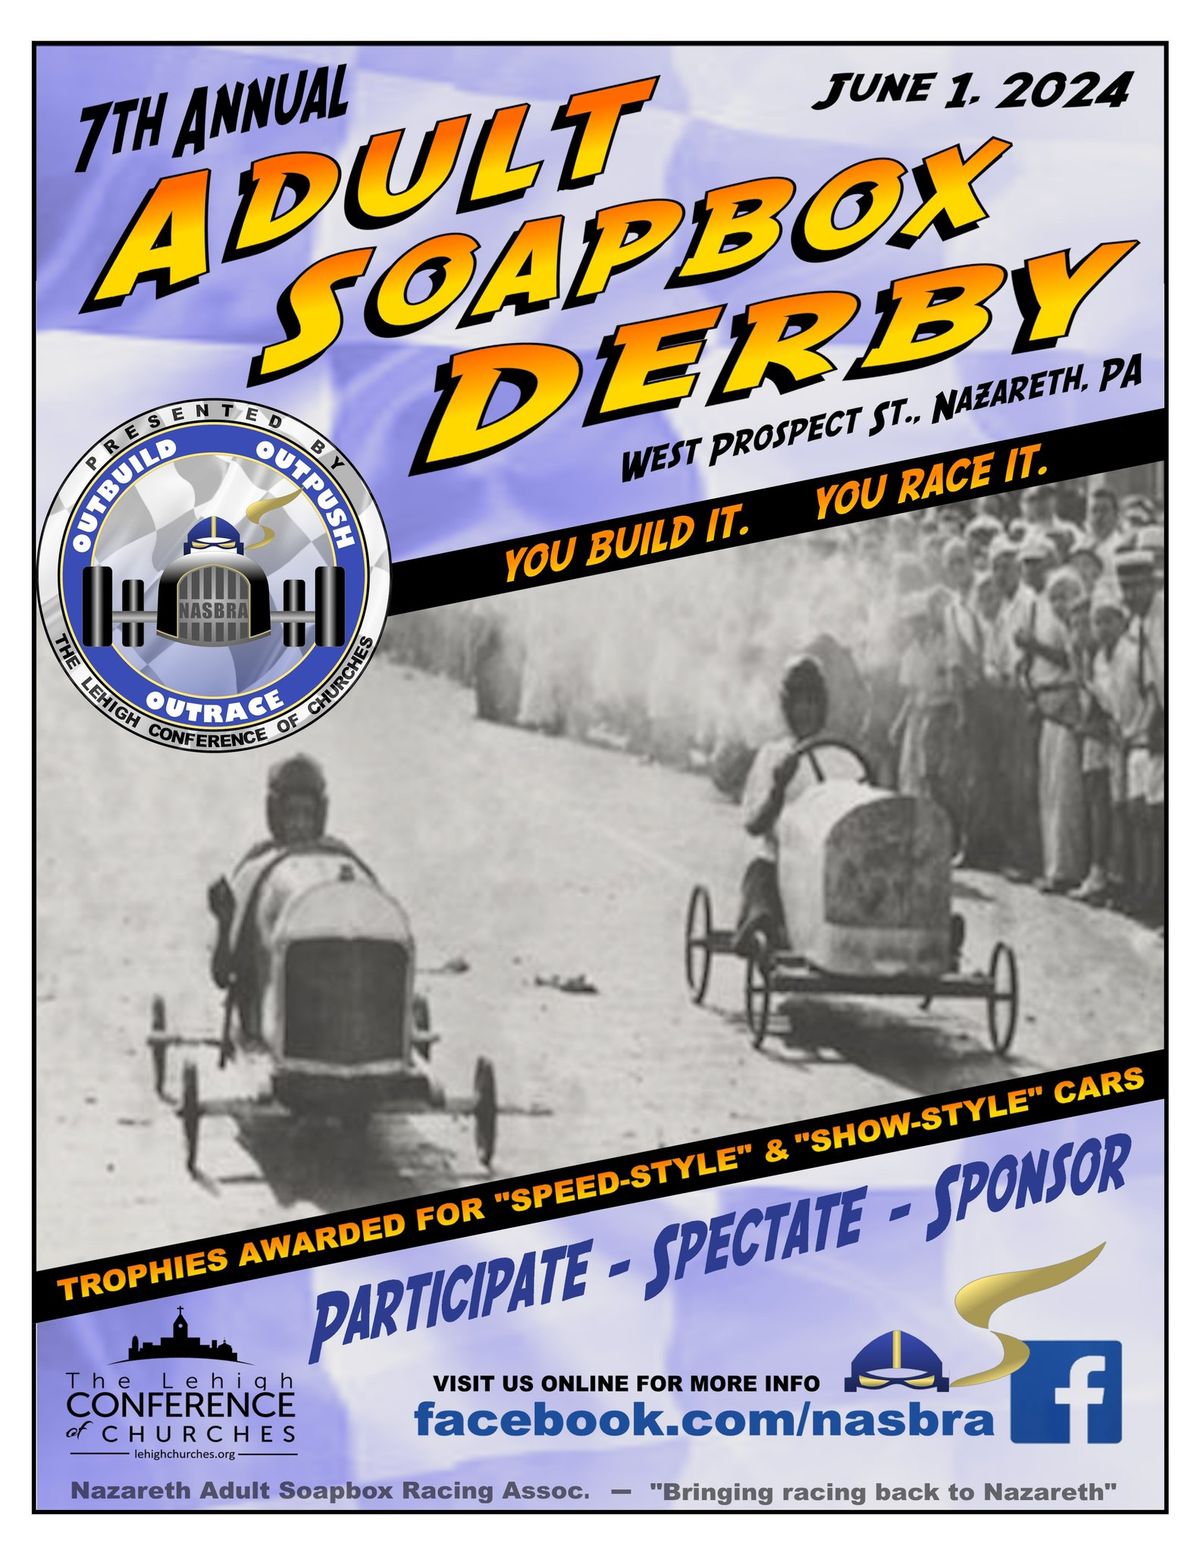 7th Annual Nazareth Adult Soapbox Derby